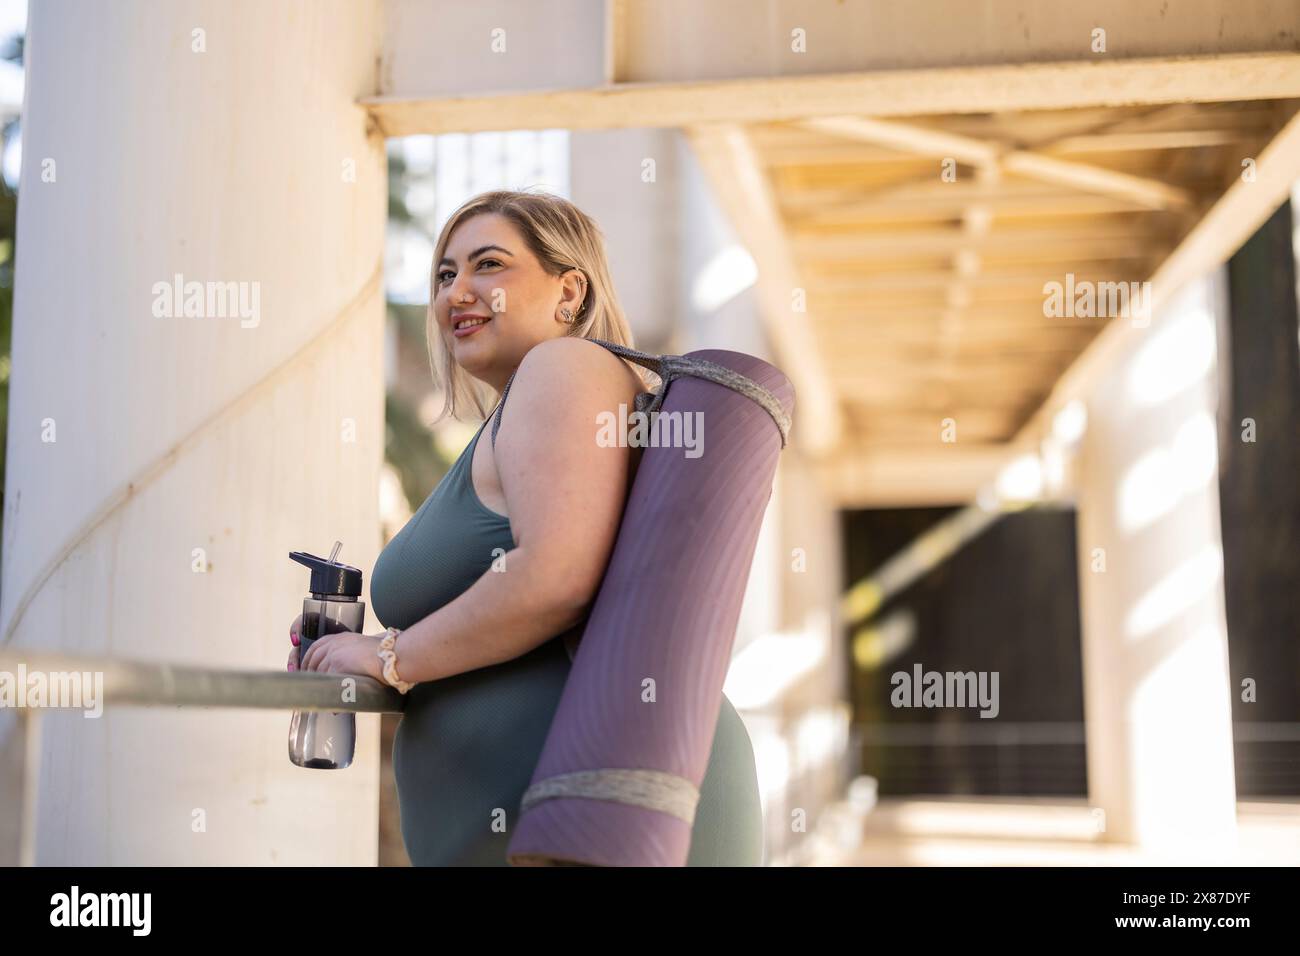 Lächelnde junge kurvige Frau, die mit Trainingsmatte und Wasserflasche steht Stockfoto